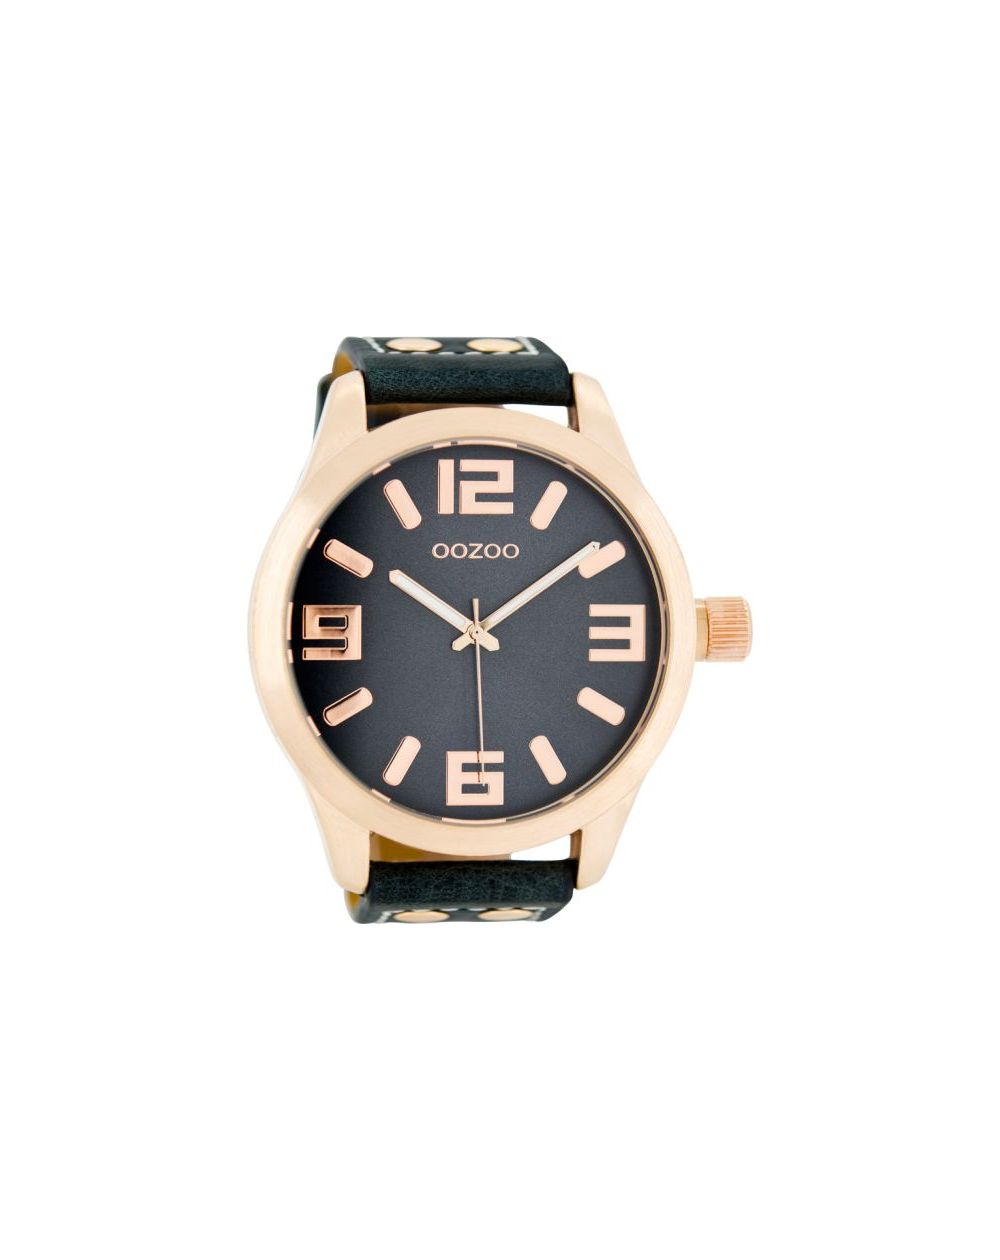 Oozoo montre/watch/horloge C1107